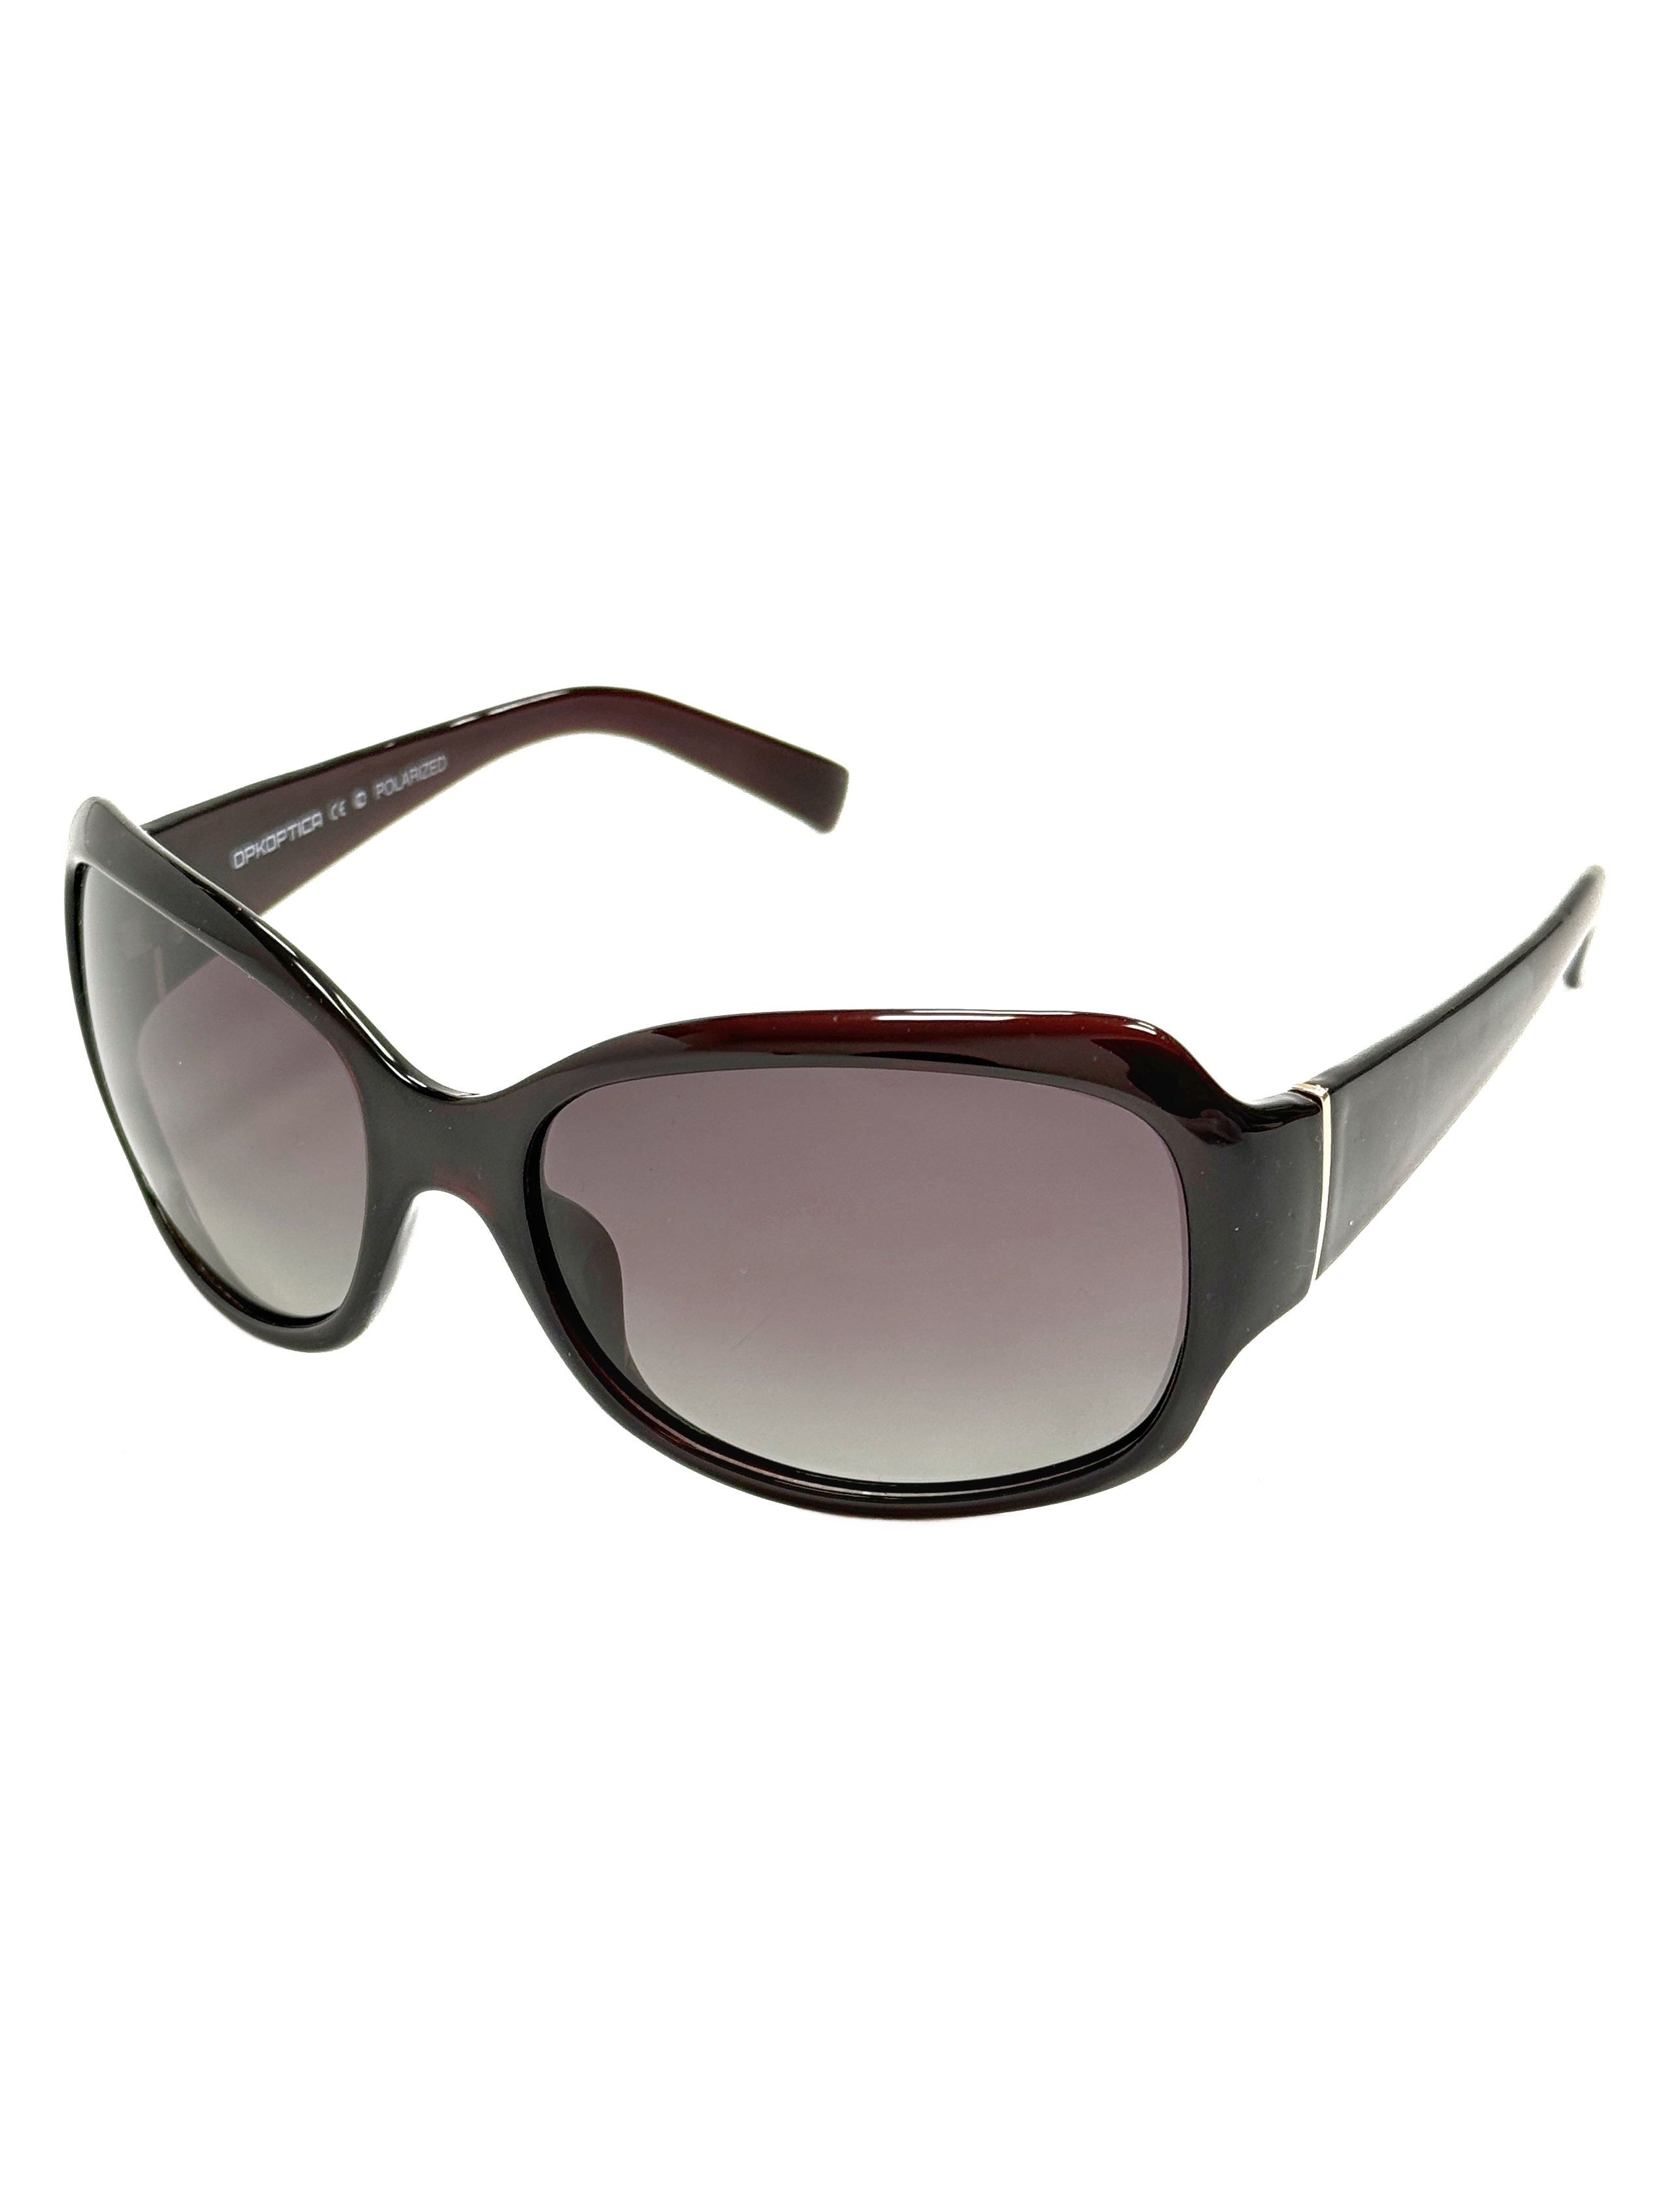 Солнцезащитные очки женские OPK.OPTICA 6170 коричневые